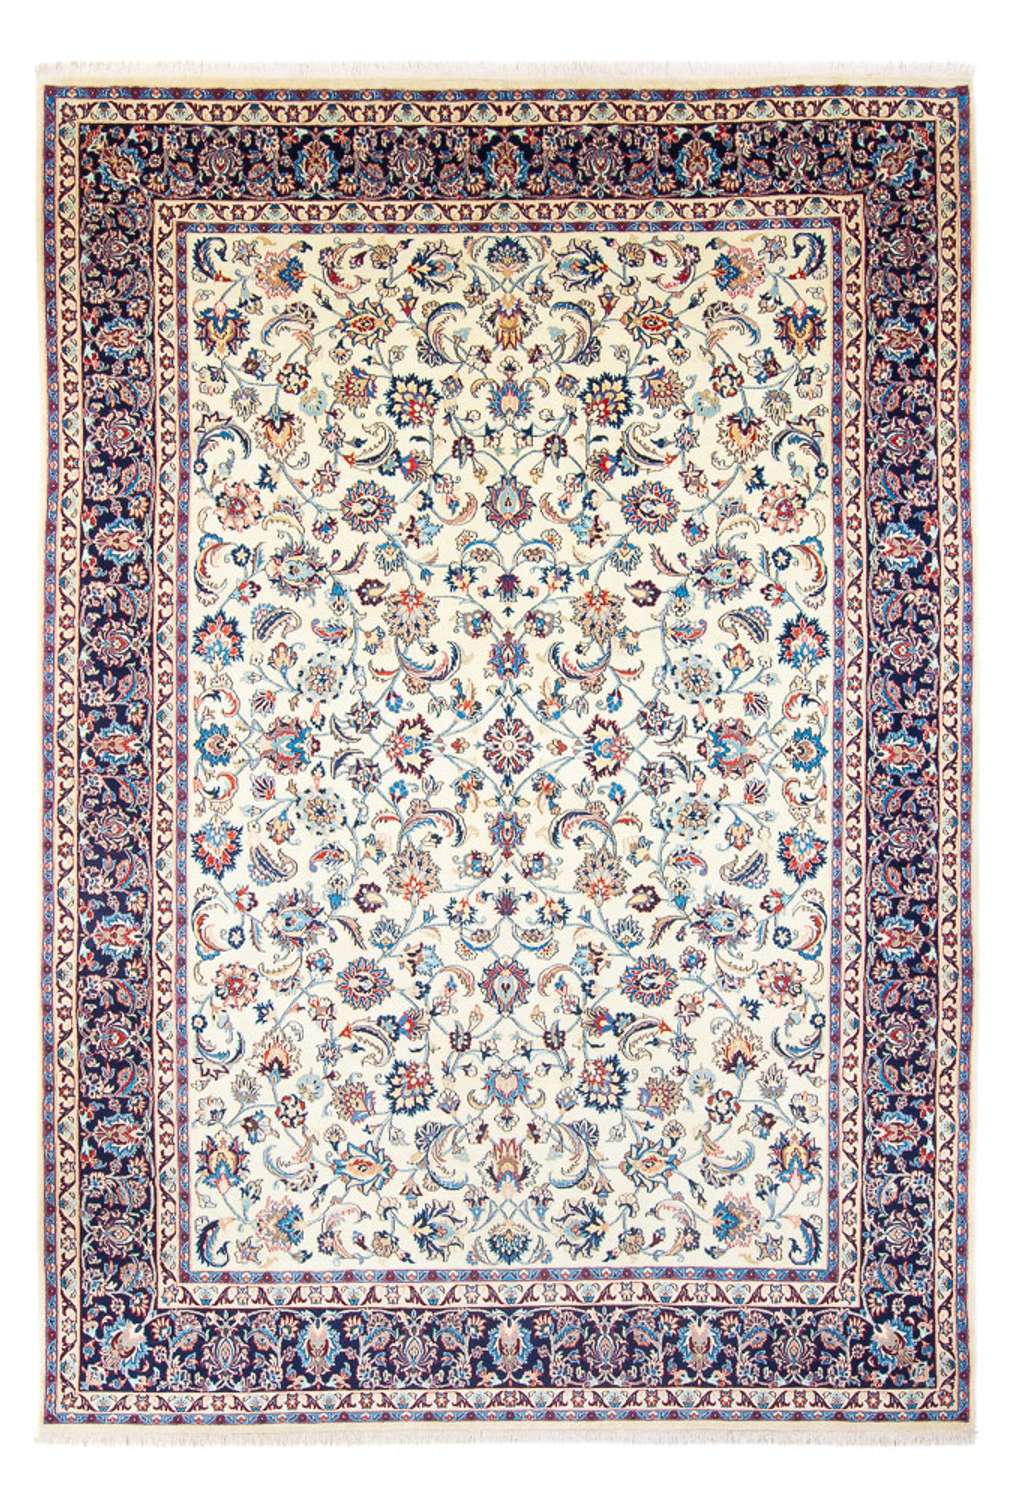 Tapis persan - Classique - 357 x 245 cm - multicolore